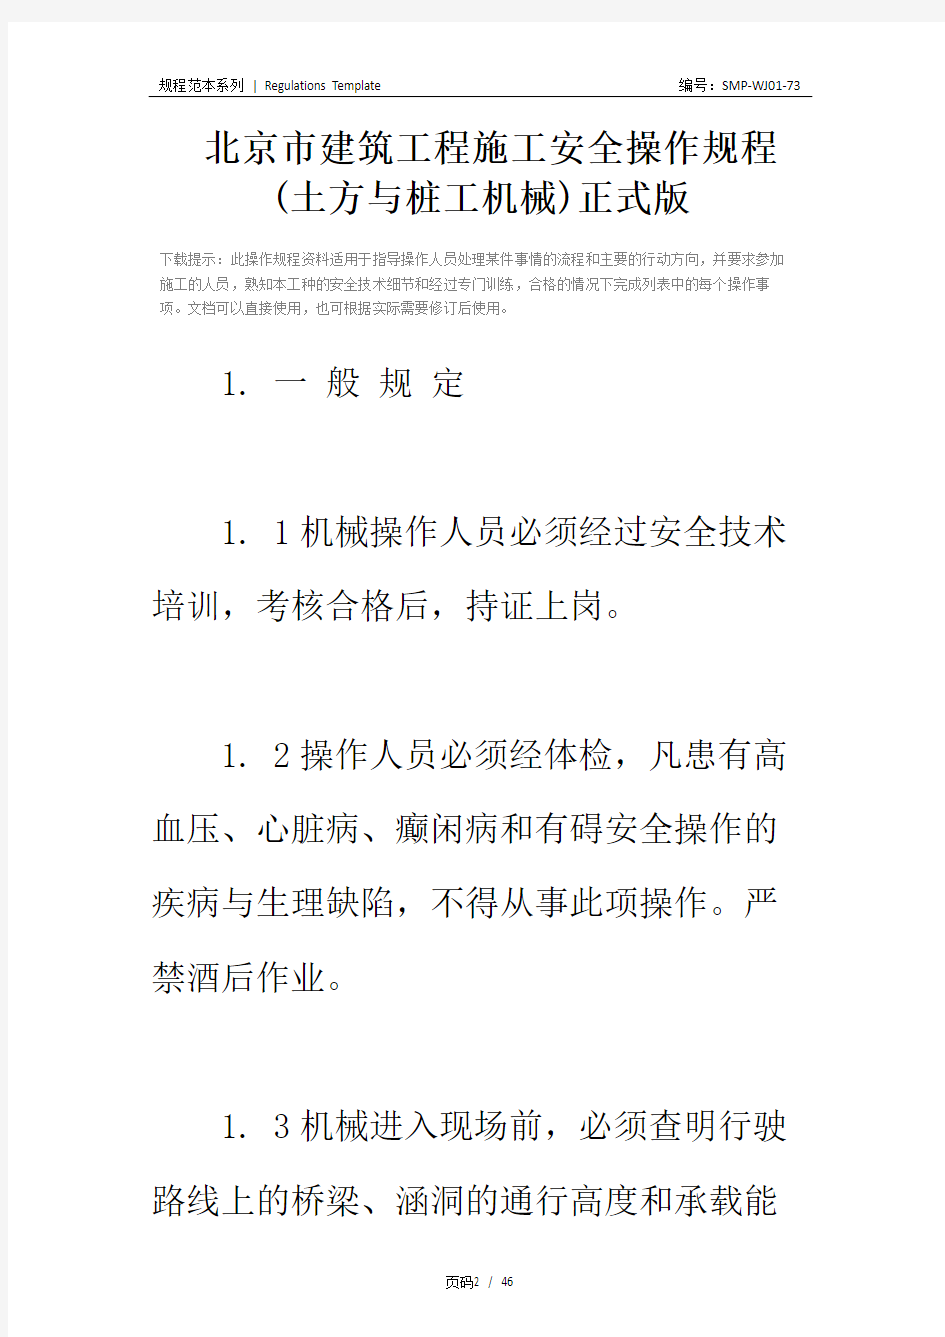 北京市建筑工程施工安全操作规程 (土方与桩工机械)正式版